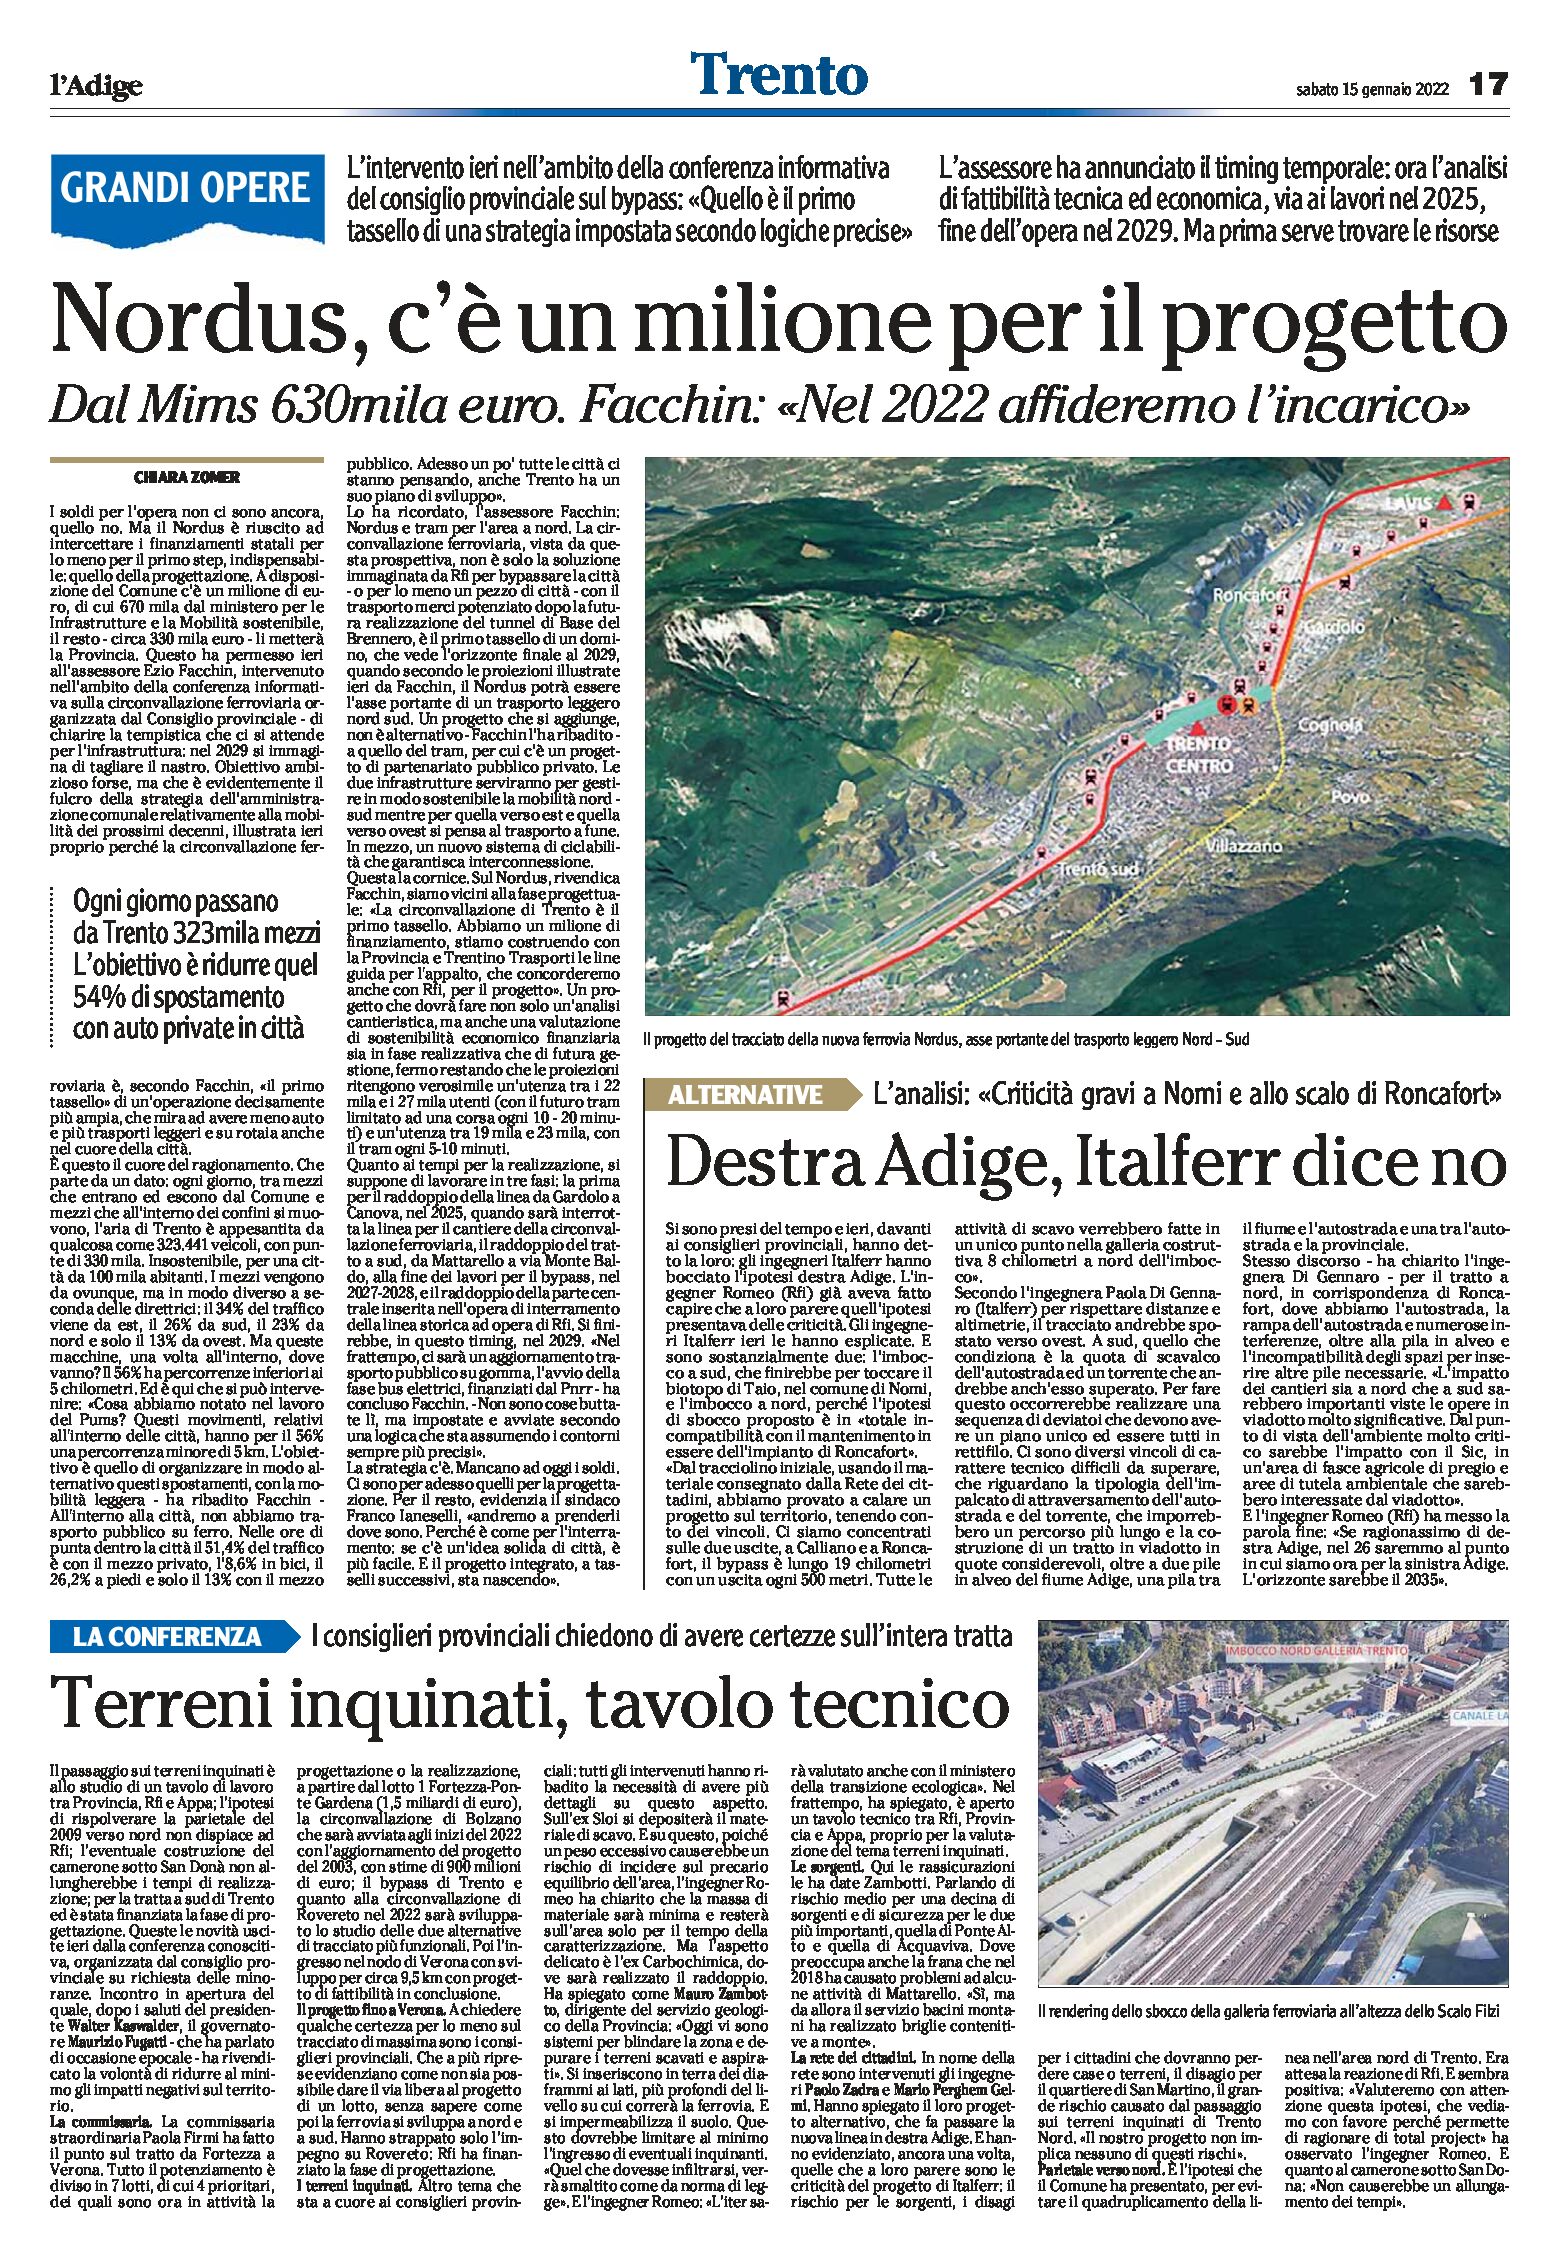 Trento, grandi opere: Nordus, bypass, destra Adige, terreni inquinati